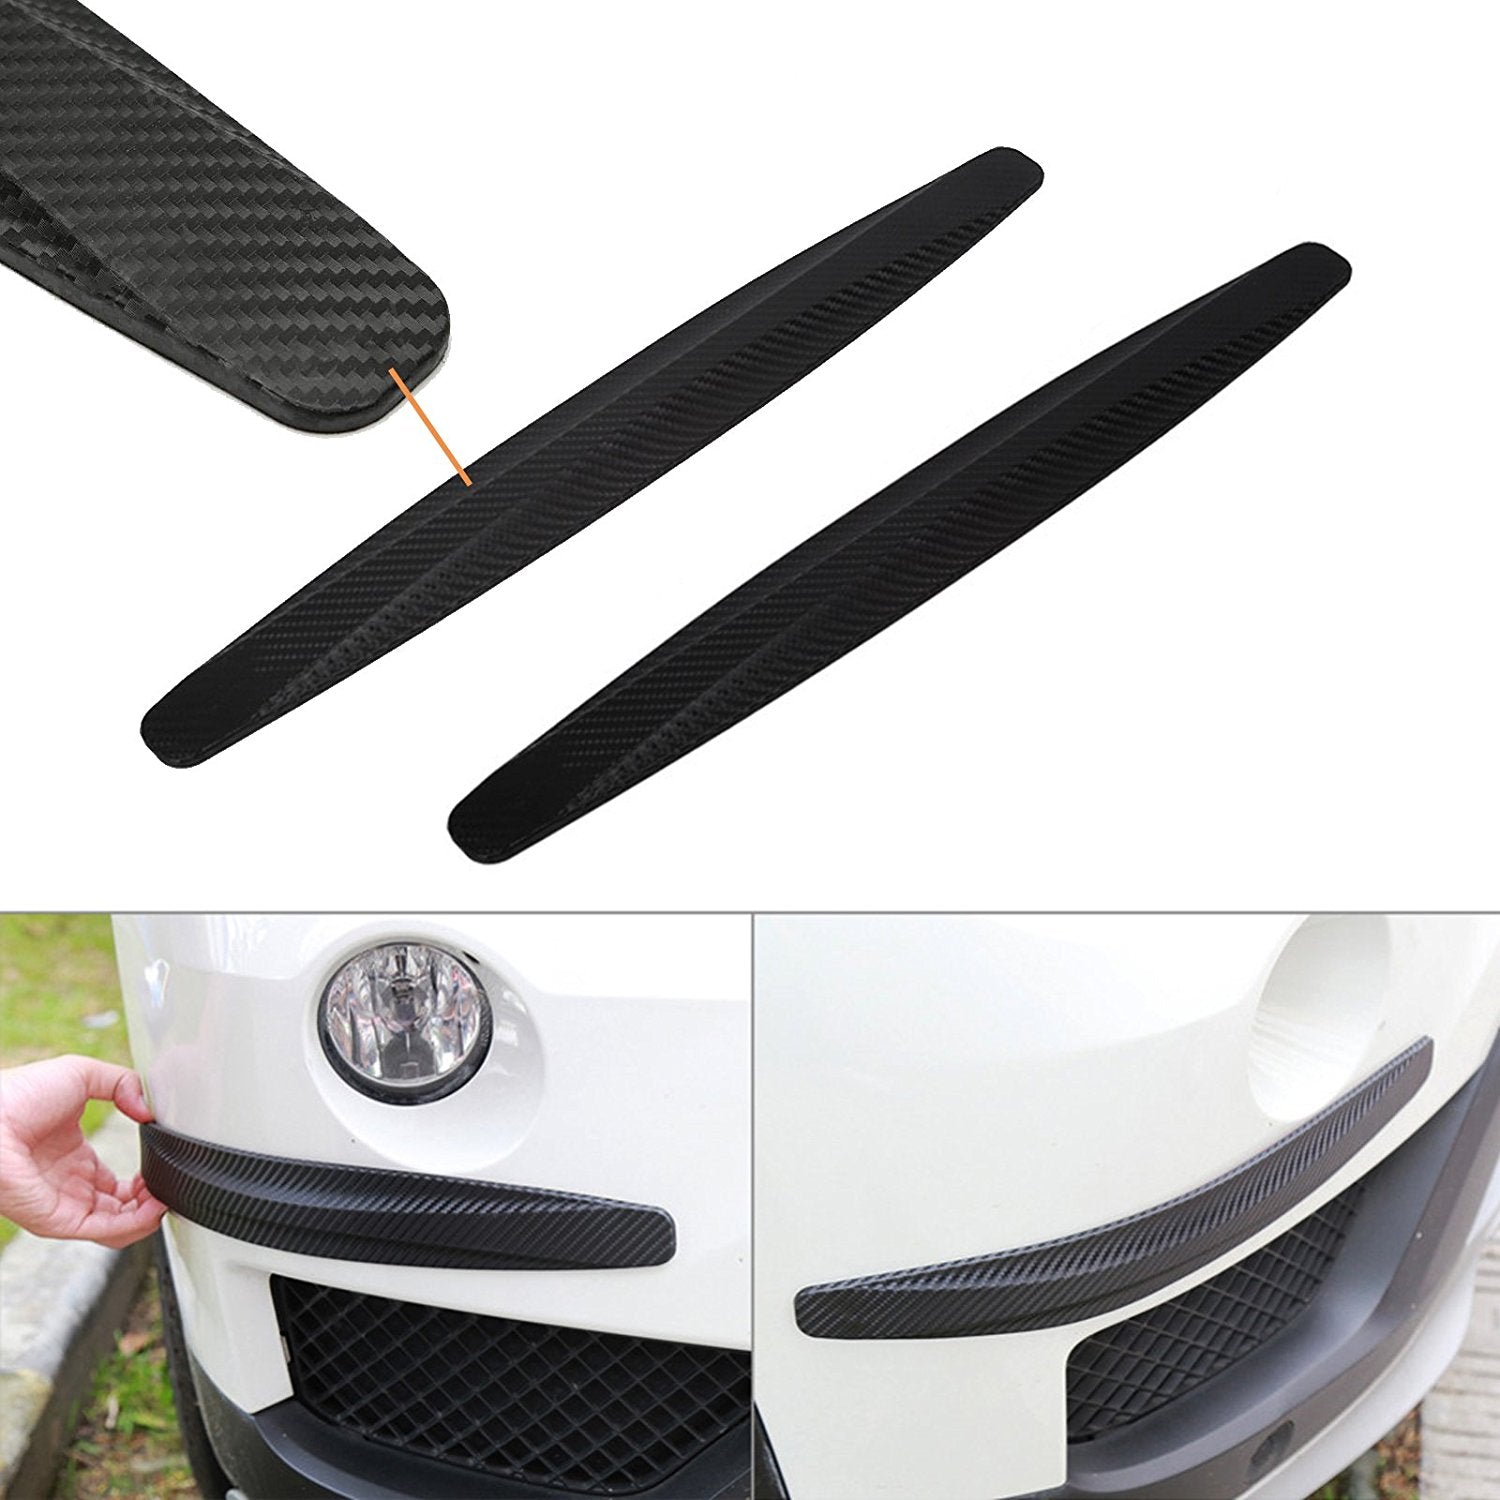 2 pieces Universal Carbon Fiber Pattern Front Rear Bumper Corner